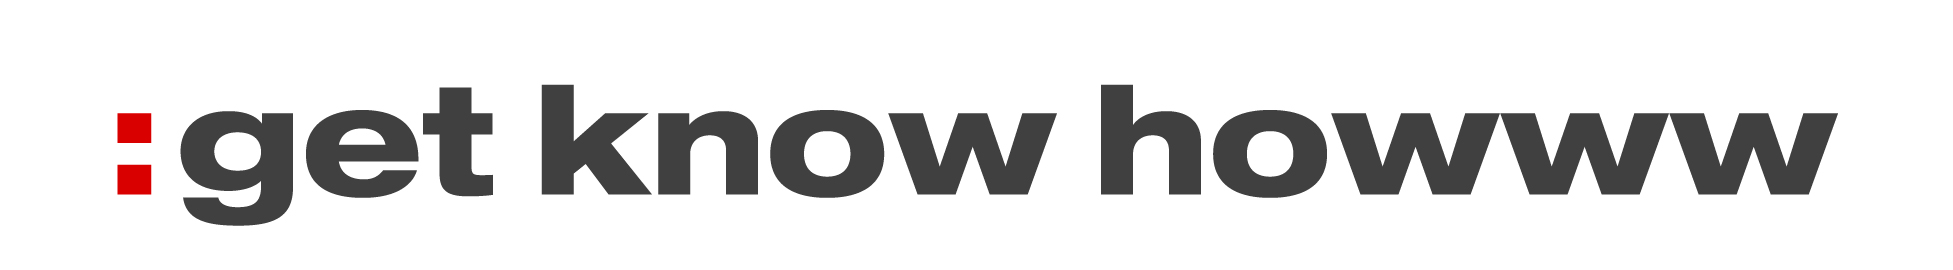 Logo get know howww